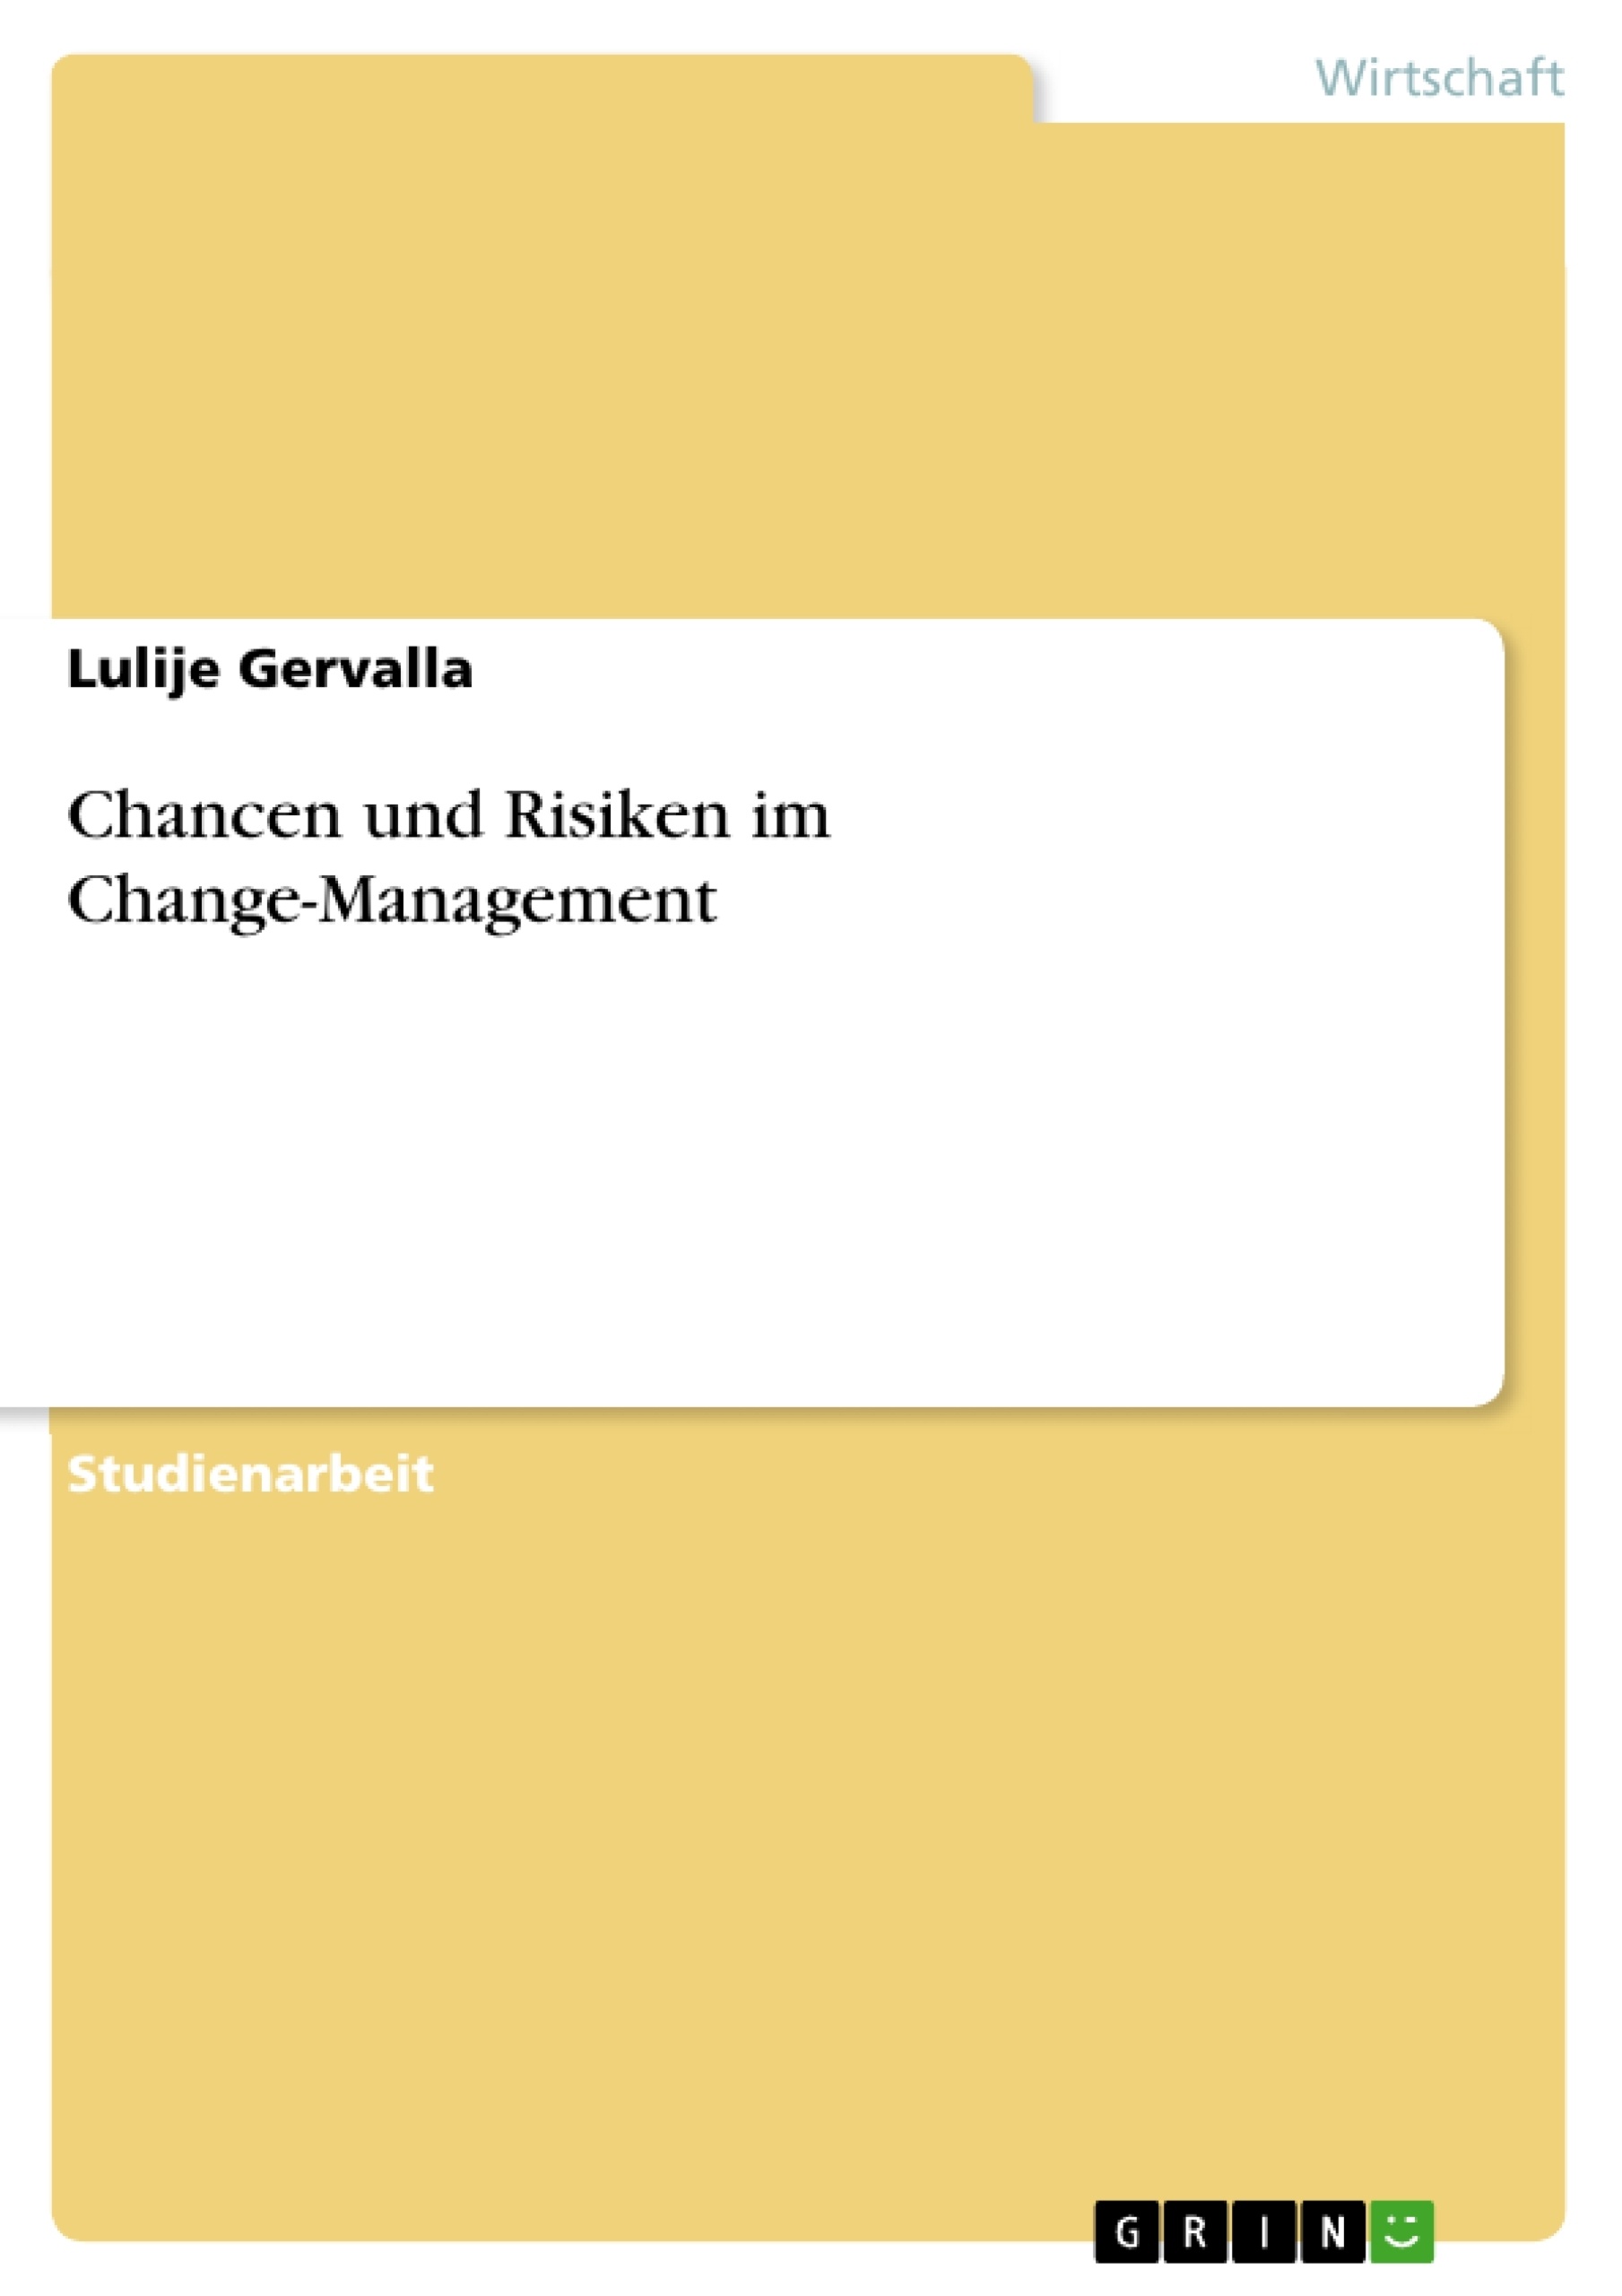 Titre: Chancen und Risiken im Change-Management